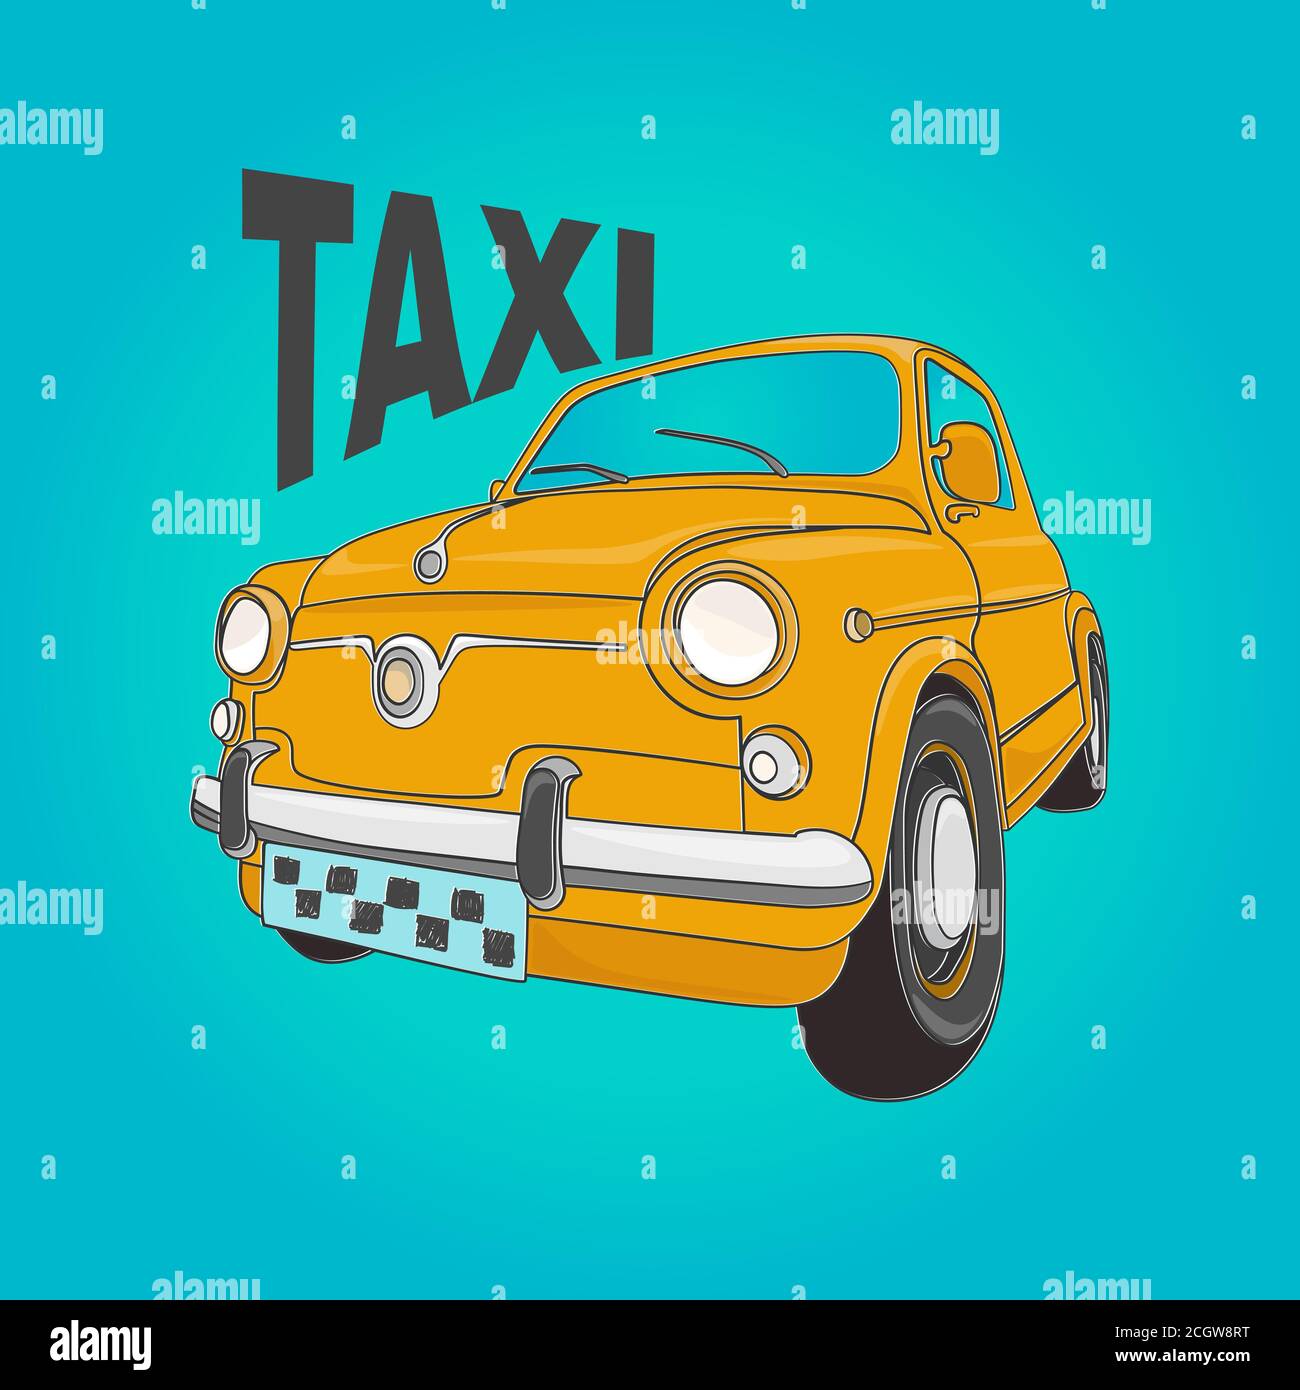 Illustrazione vettoriale di un taxi giallo retrò. Vista dal basso della vettura sulla ruota Illustrazione Vettoriale